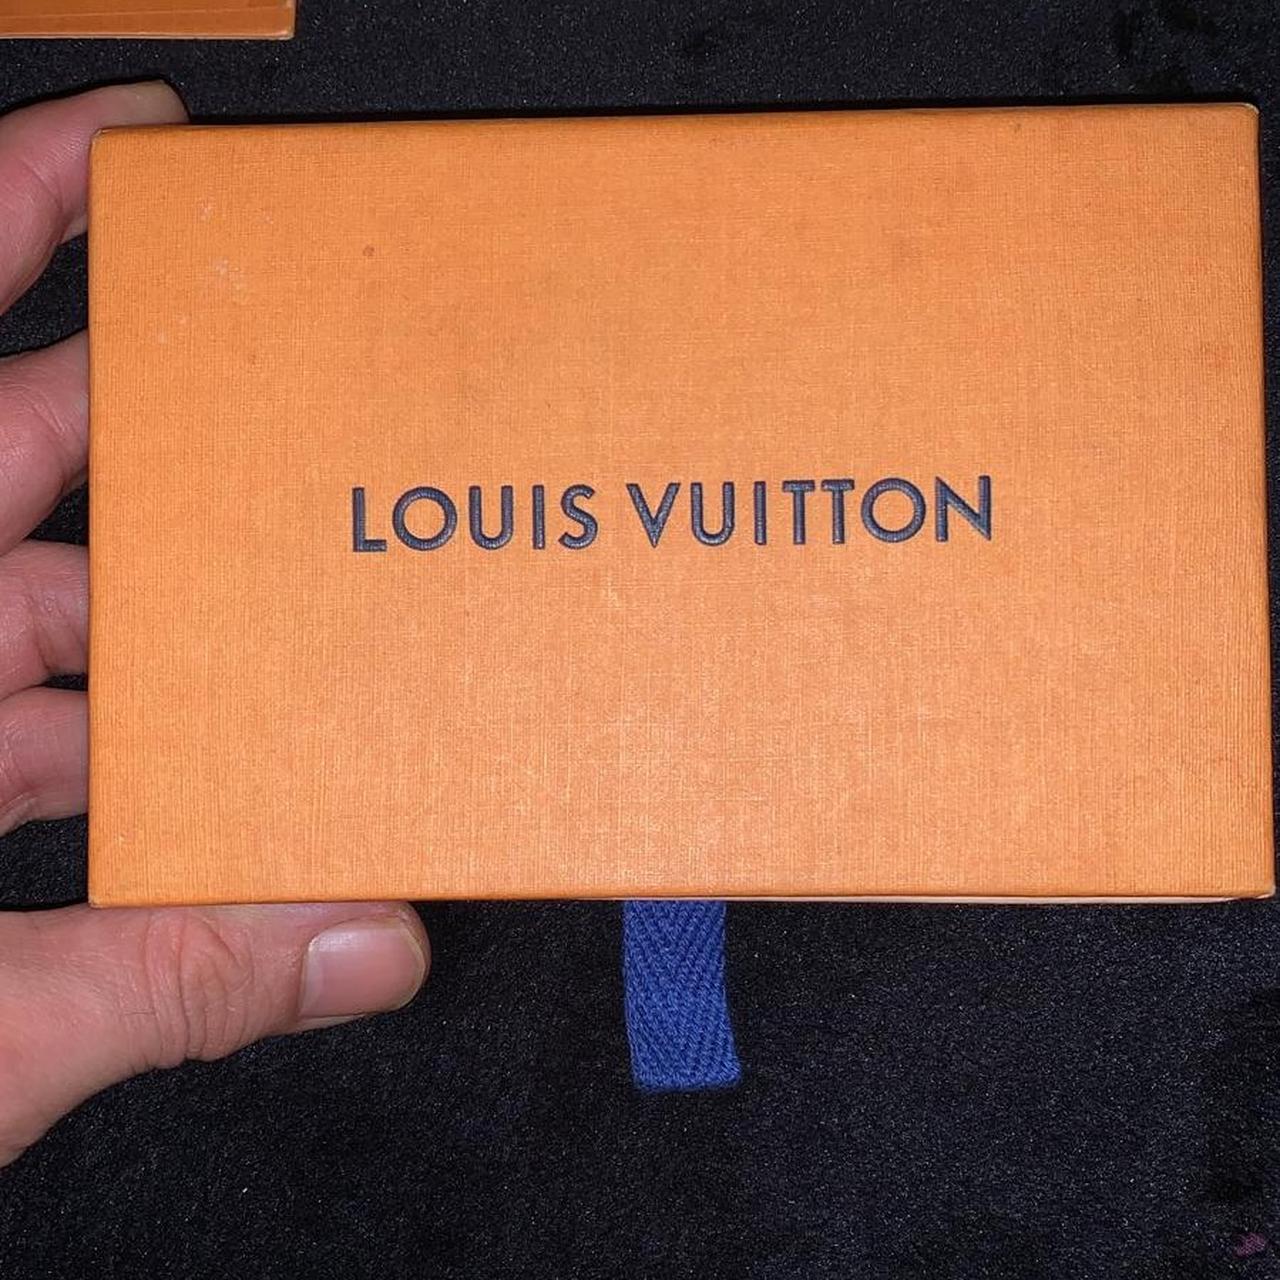 LOUIS VUITTON Epi Leather Card - Depop